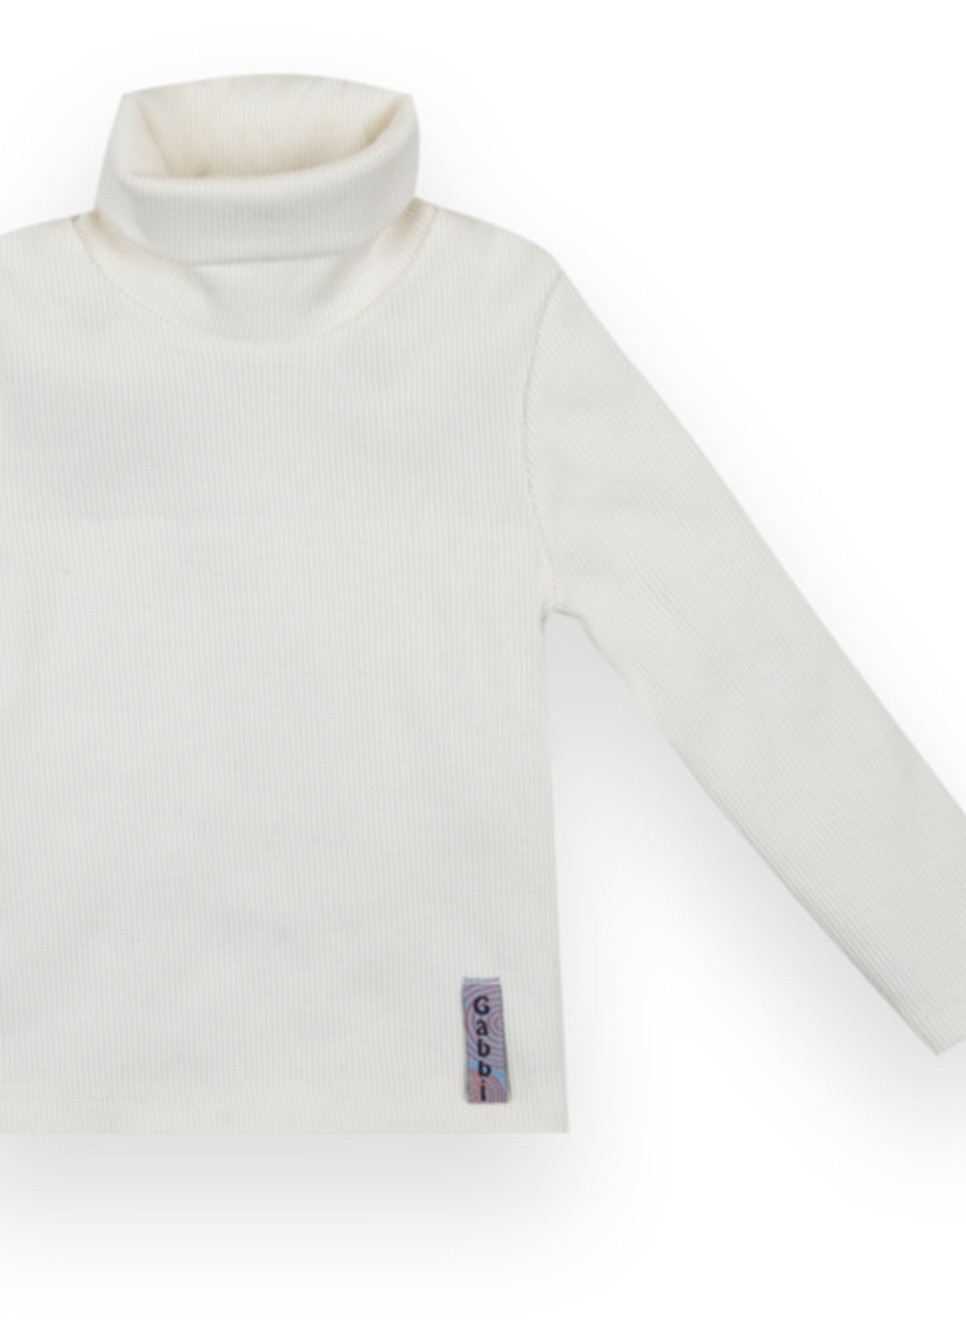 Белый демисезонный детский свитер sv-21-10-2 *стиль* Габби